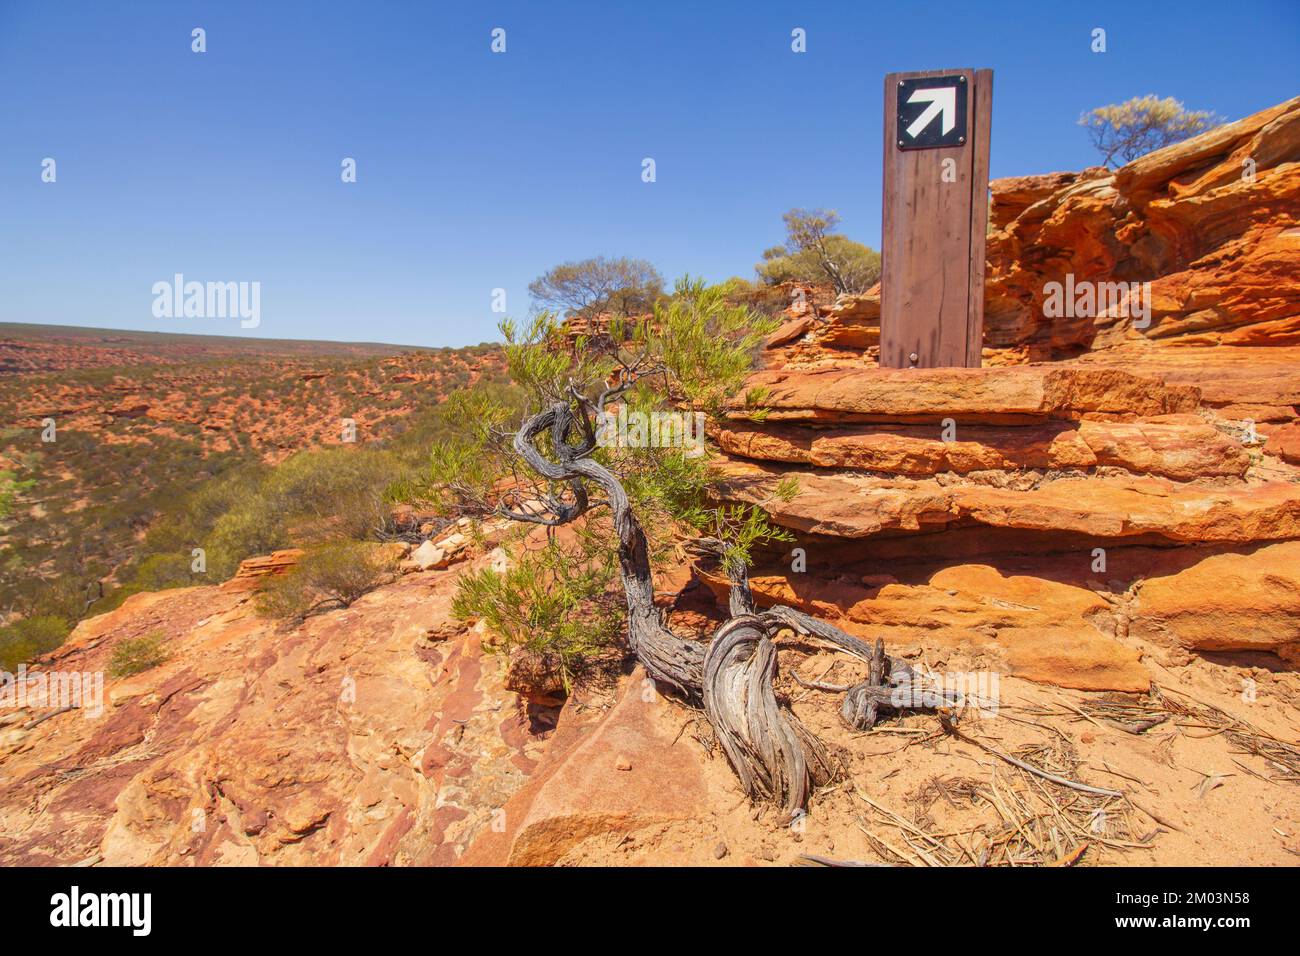 Der Nature Window Trail im Kalvance-Nationalpark, Australien, ist ein markanter Pfosten und mit Stunts bewachsene, stabile Bäume auf rötlichen Sandsteinen. Stockfoto